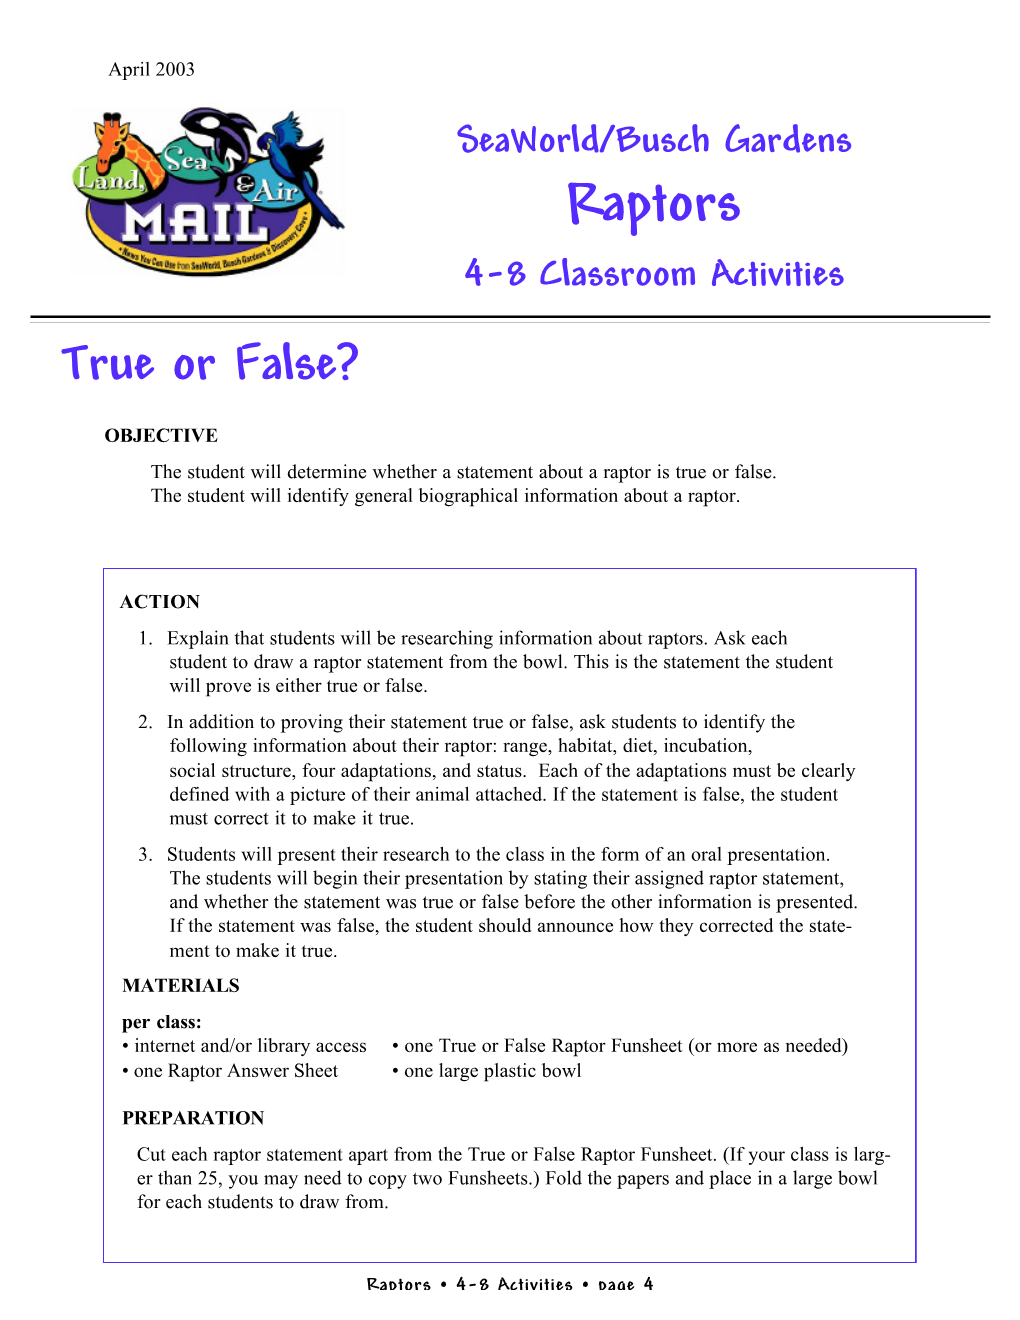 True Or False (4-8)